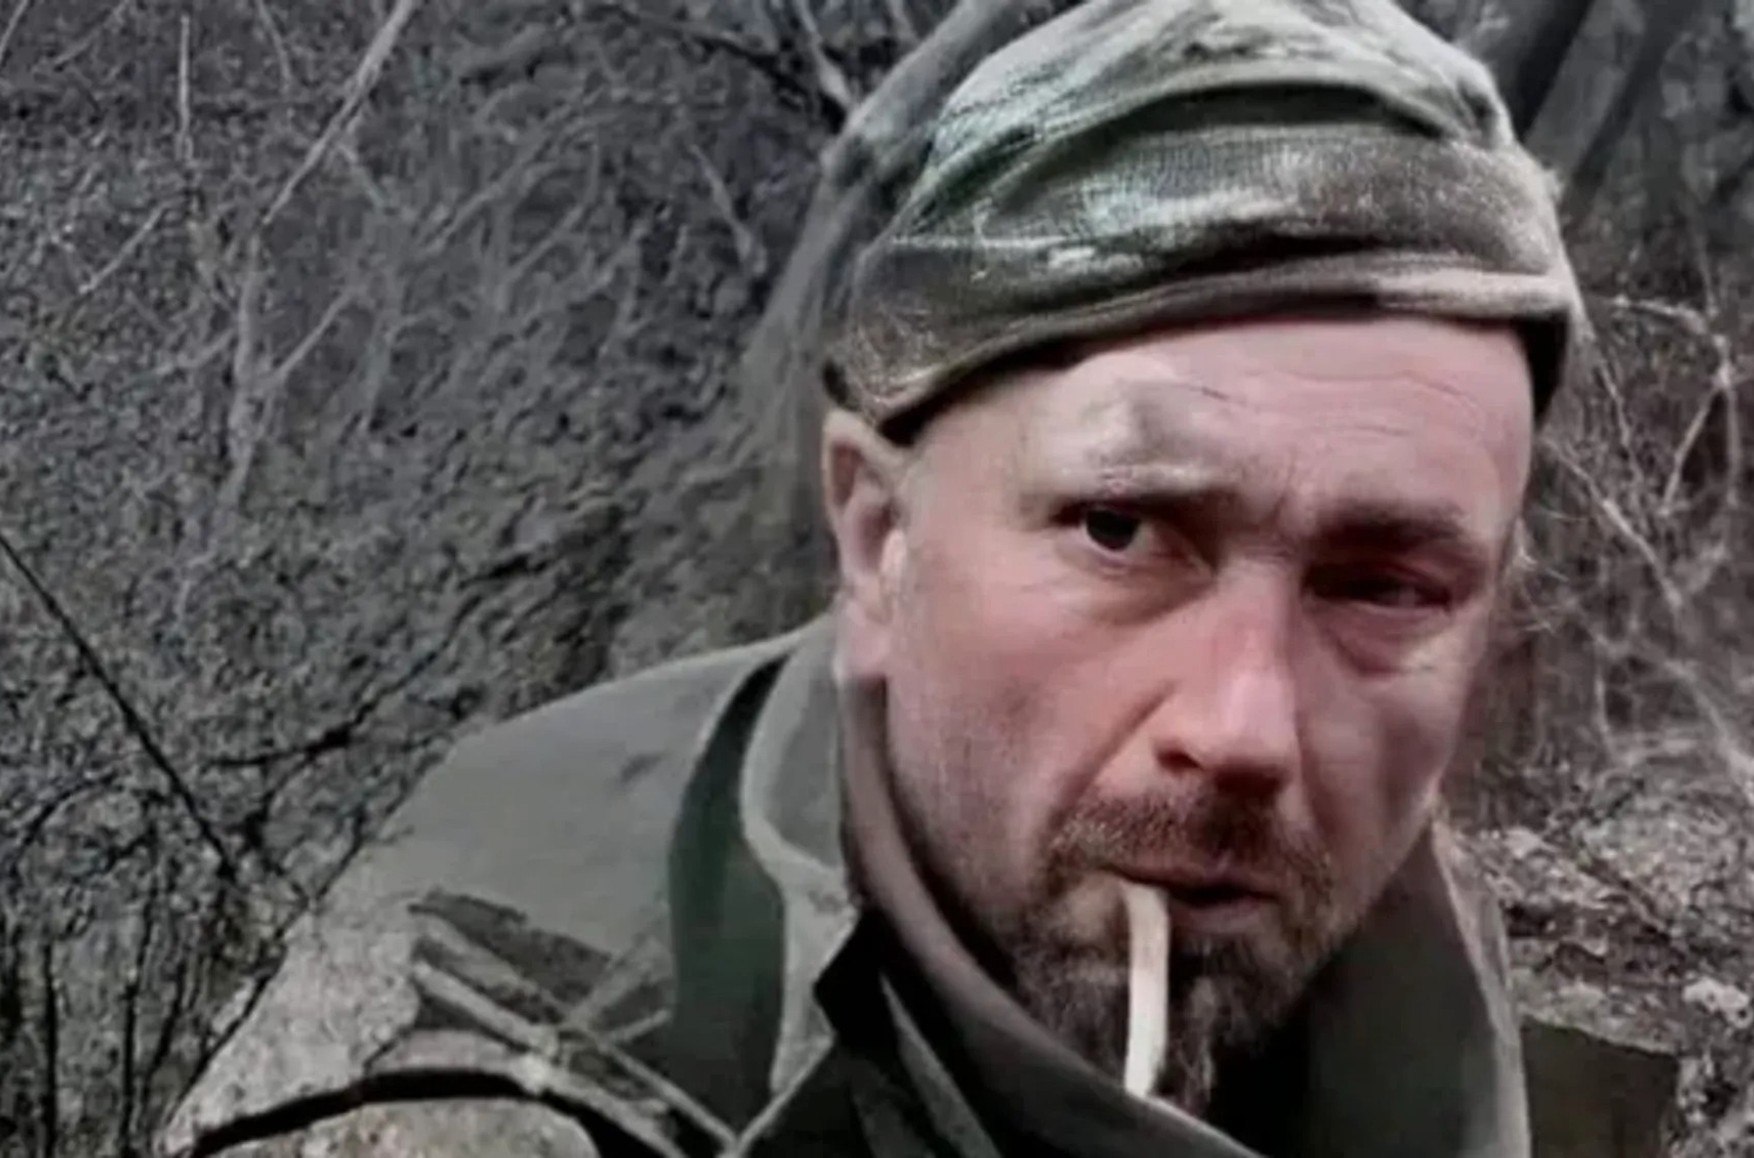 ООН заявила о подлинности видео с убийством безоружного украинского военного, сказавшего «Слава Украине!»